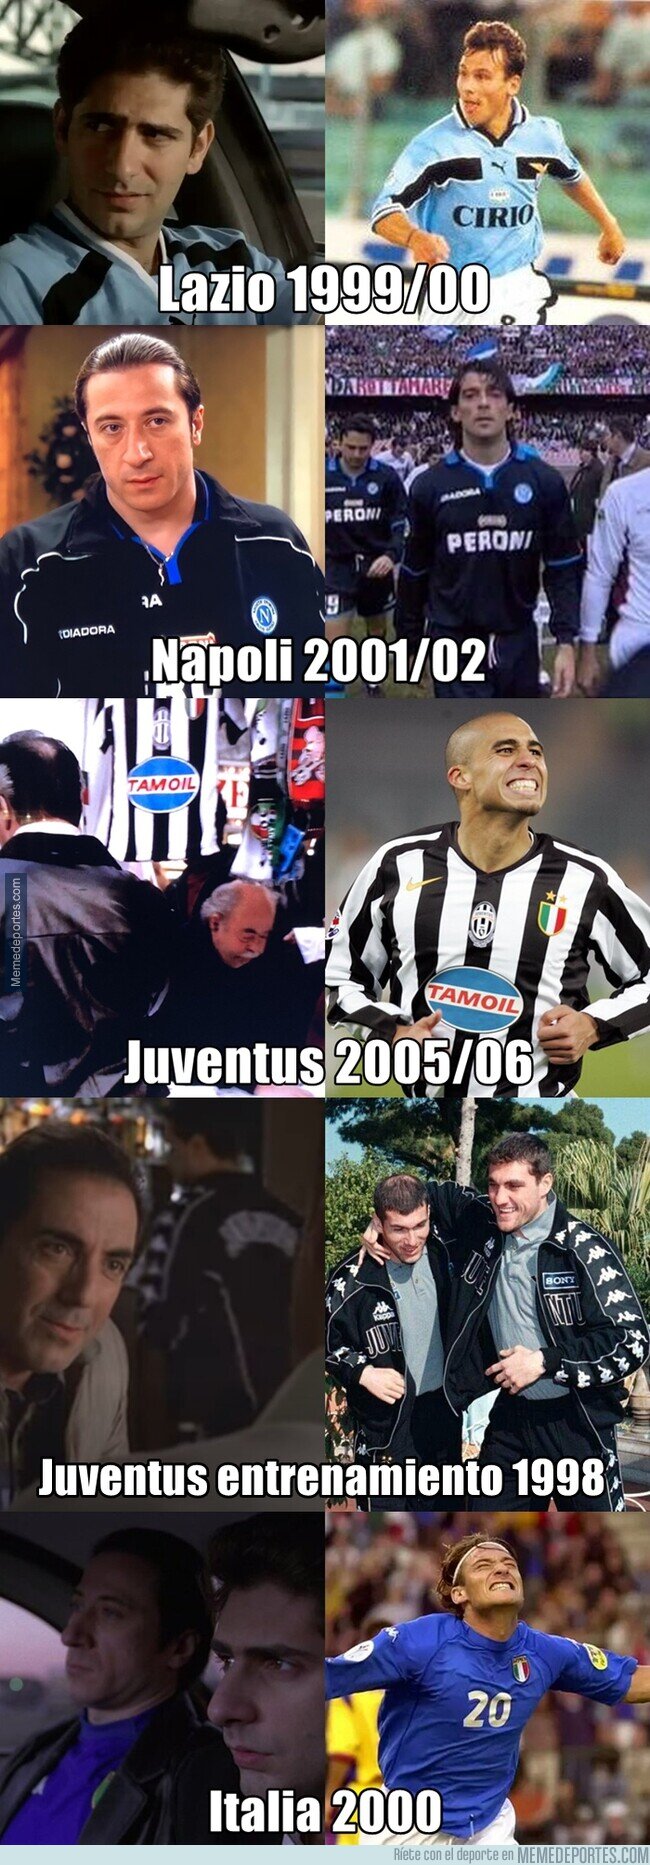 1200537 - Los Soprano cumplen 25 años. Aquí todas las camisetas del fútbol italiano que aparecieron en la serie